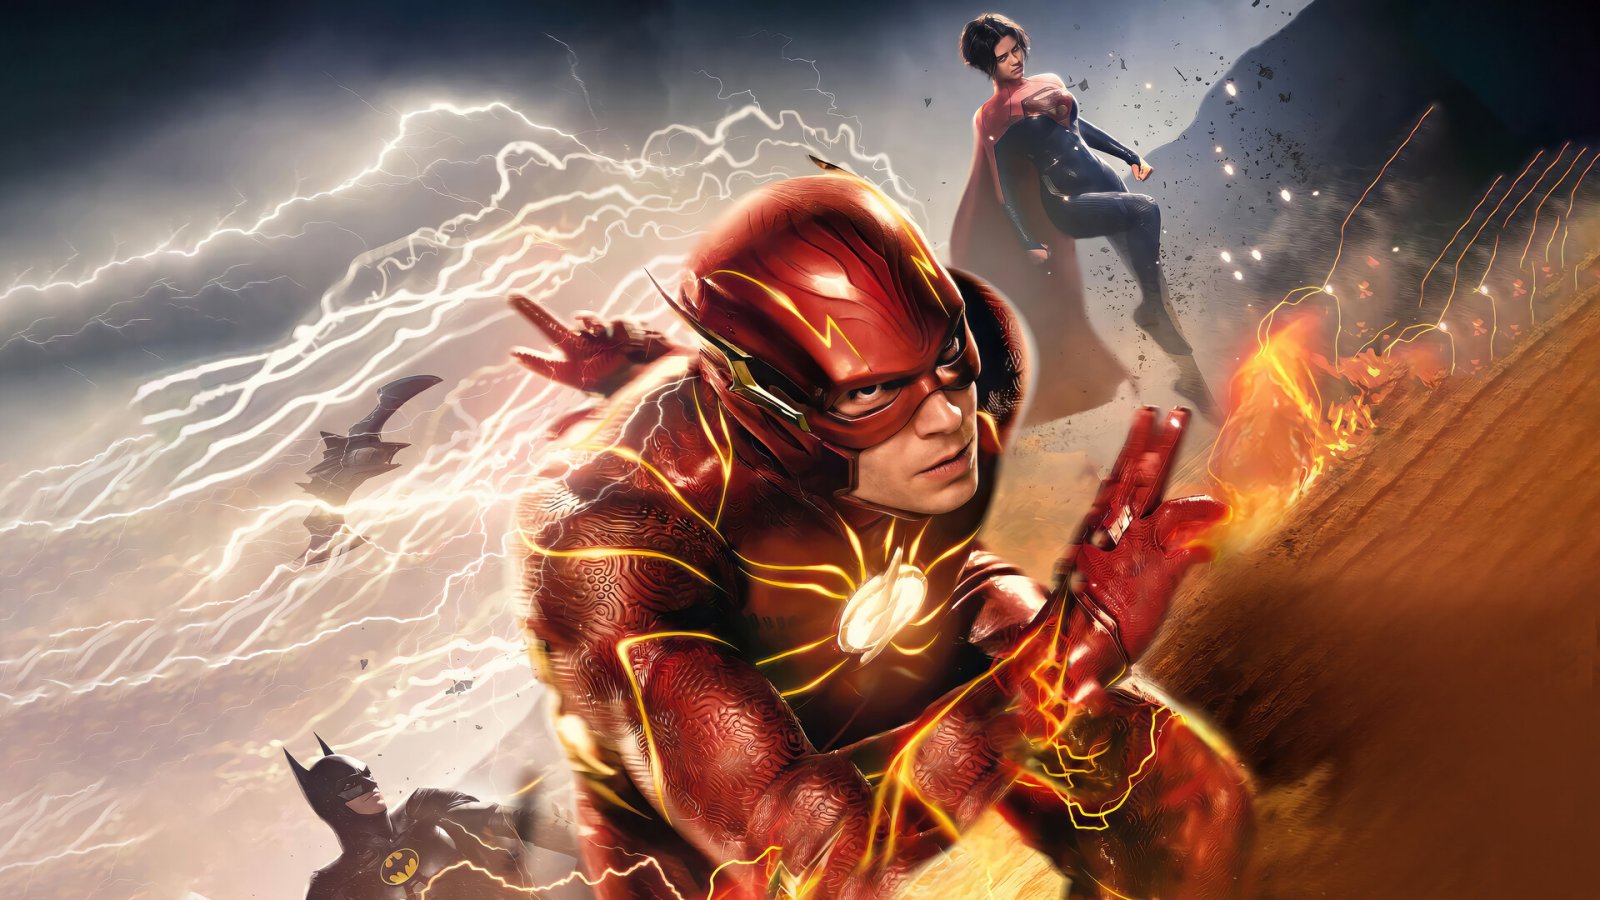 The Flash chiude la corsa al box-office con 268 milioni: è uno dei flop più grandi nella storia dei cinecomics